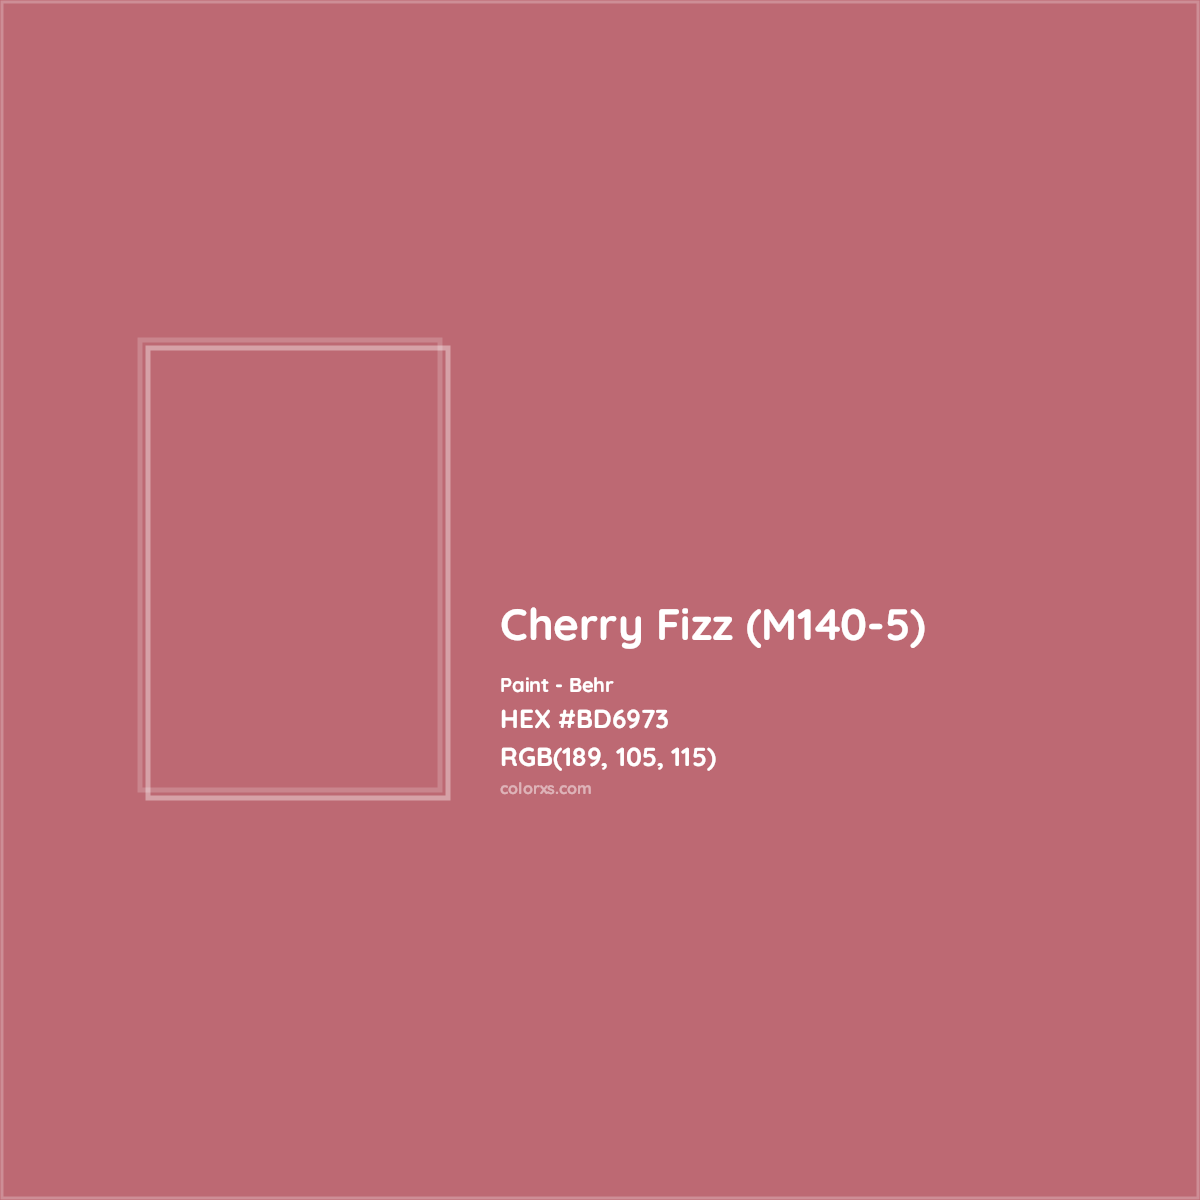 HEX #BD6973 Cherry Fizz (M140-5) Paint Behr - Color Code